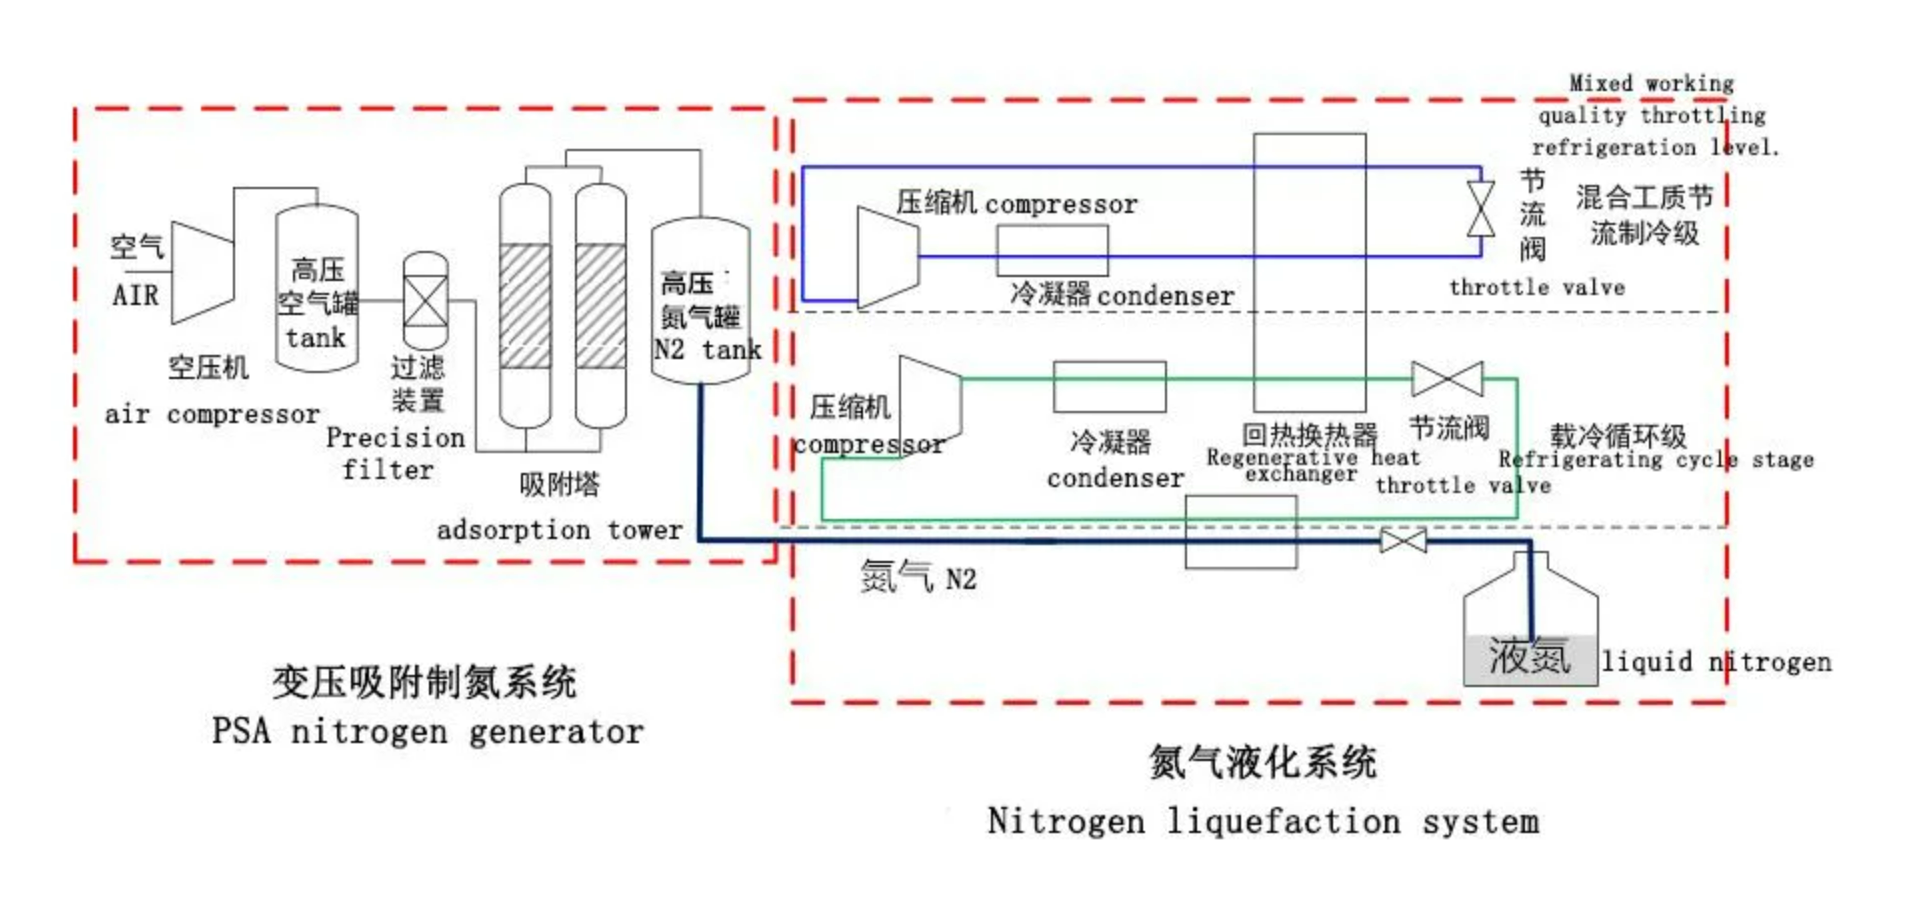 Liquid nitrogen produce process